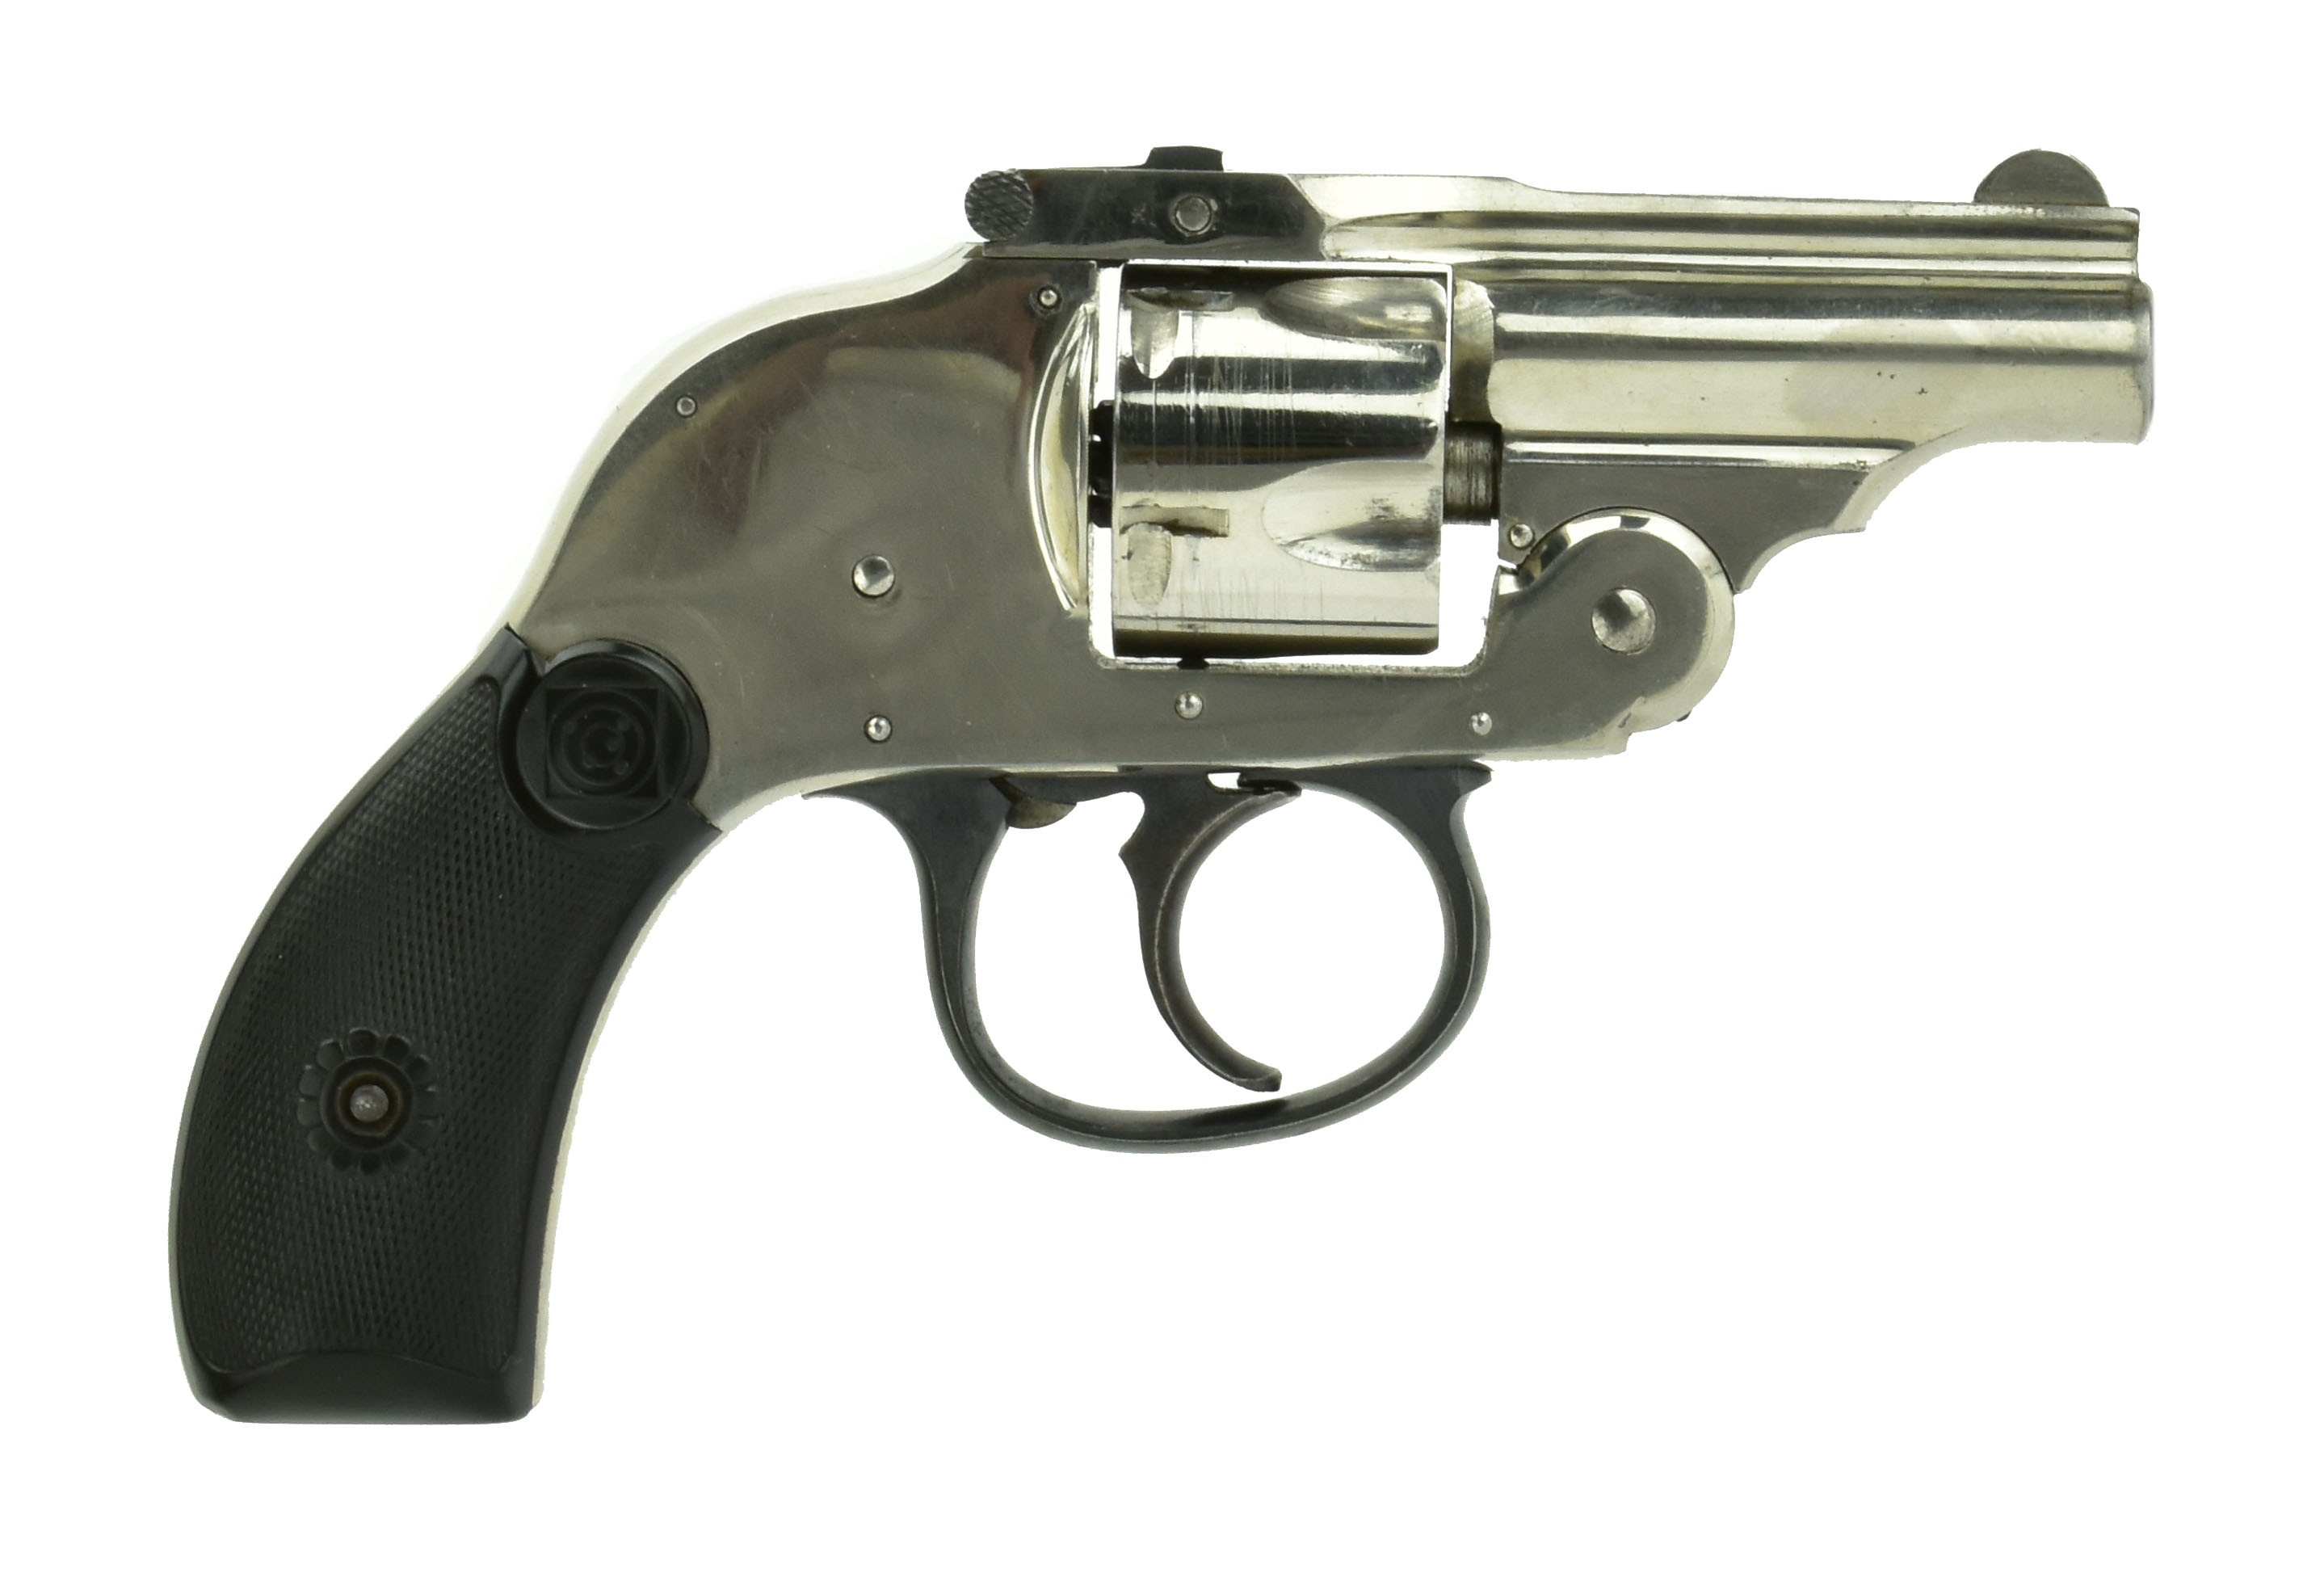 H&R .32 S&W caliber revolver for sale.